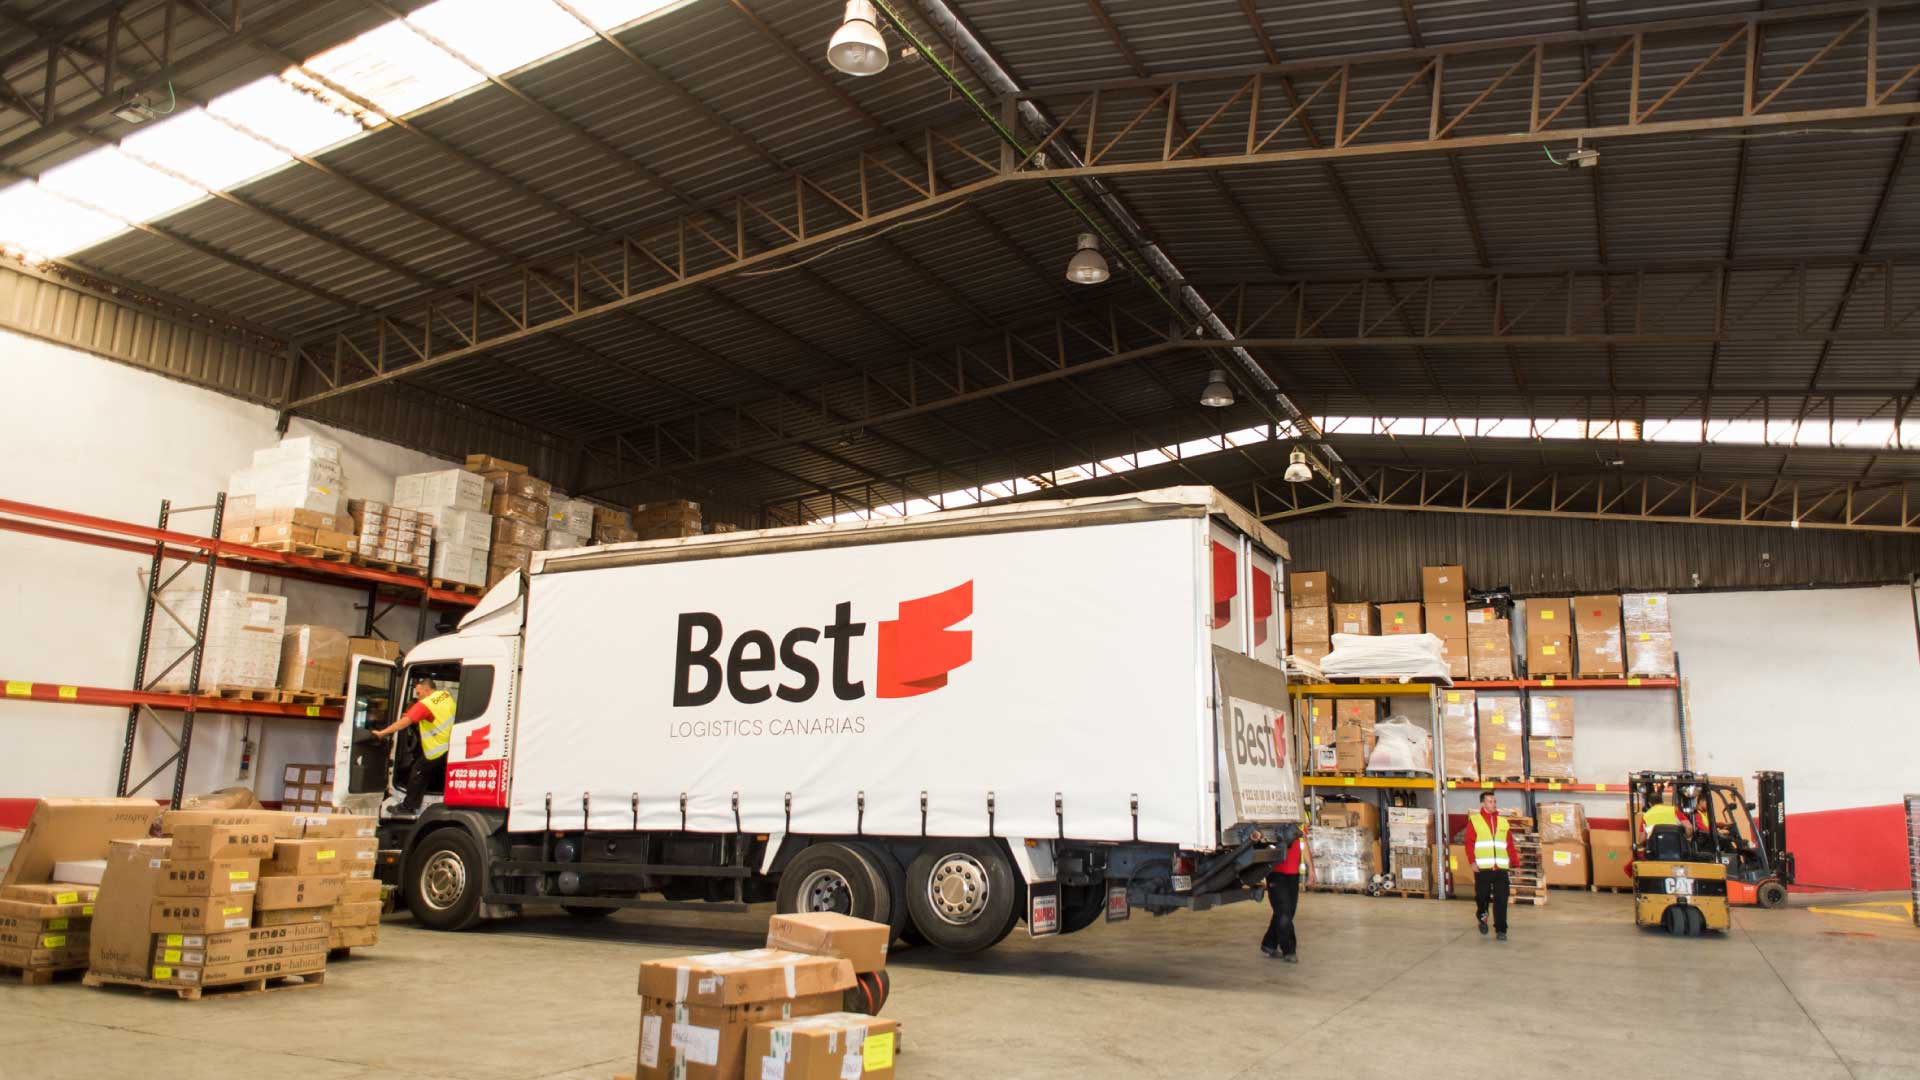 Best-Logistics-Canarias-seguro